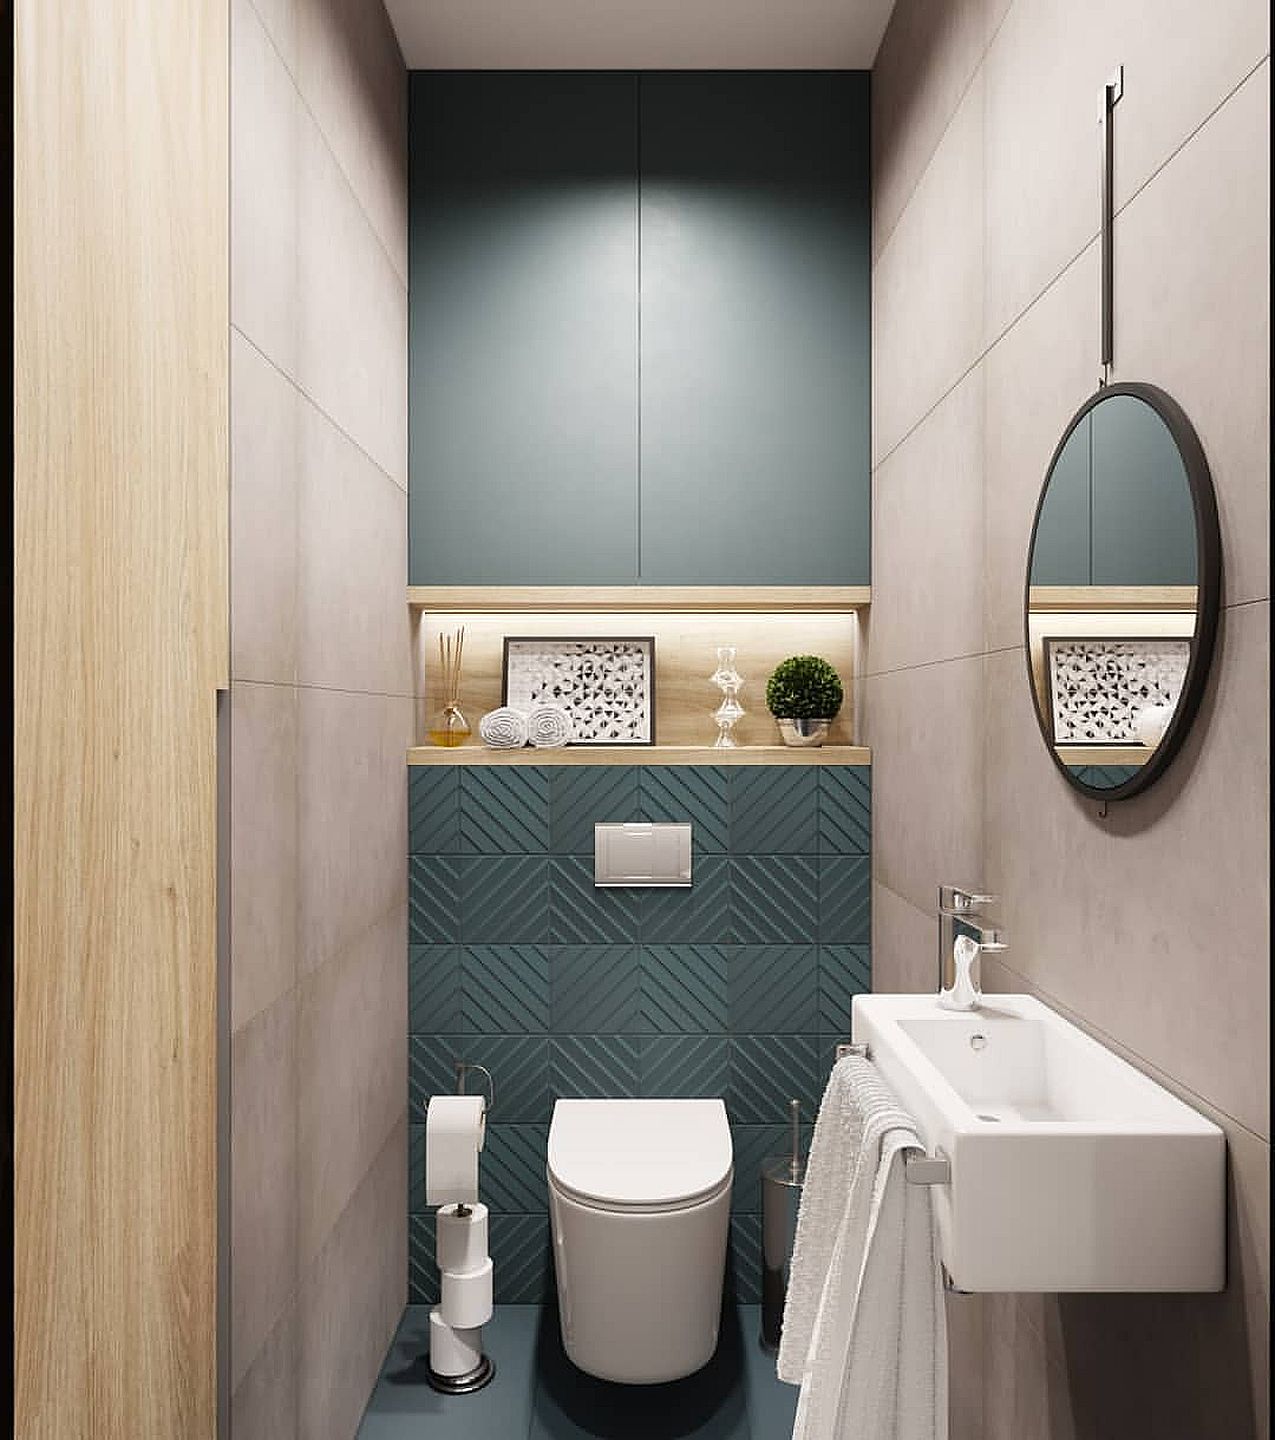 Ruangan yang kecil juga bisa disulap menjadi kamar mandi yang cantik dan estetis.